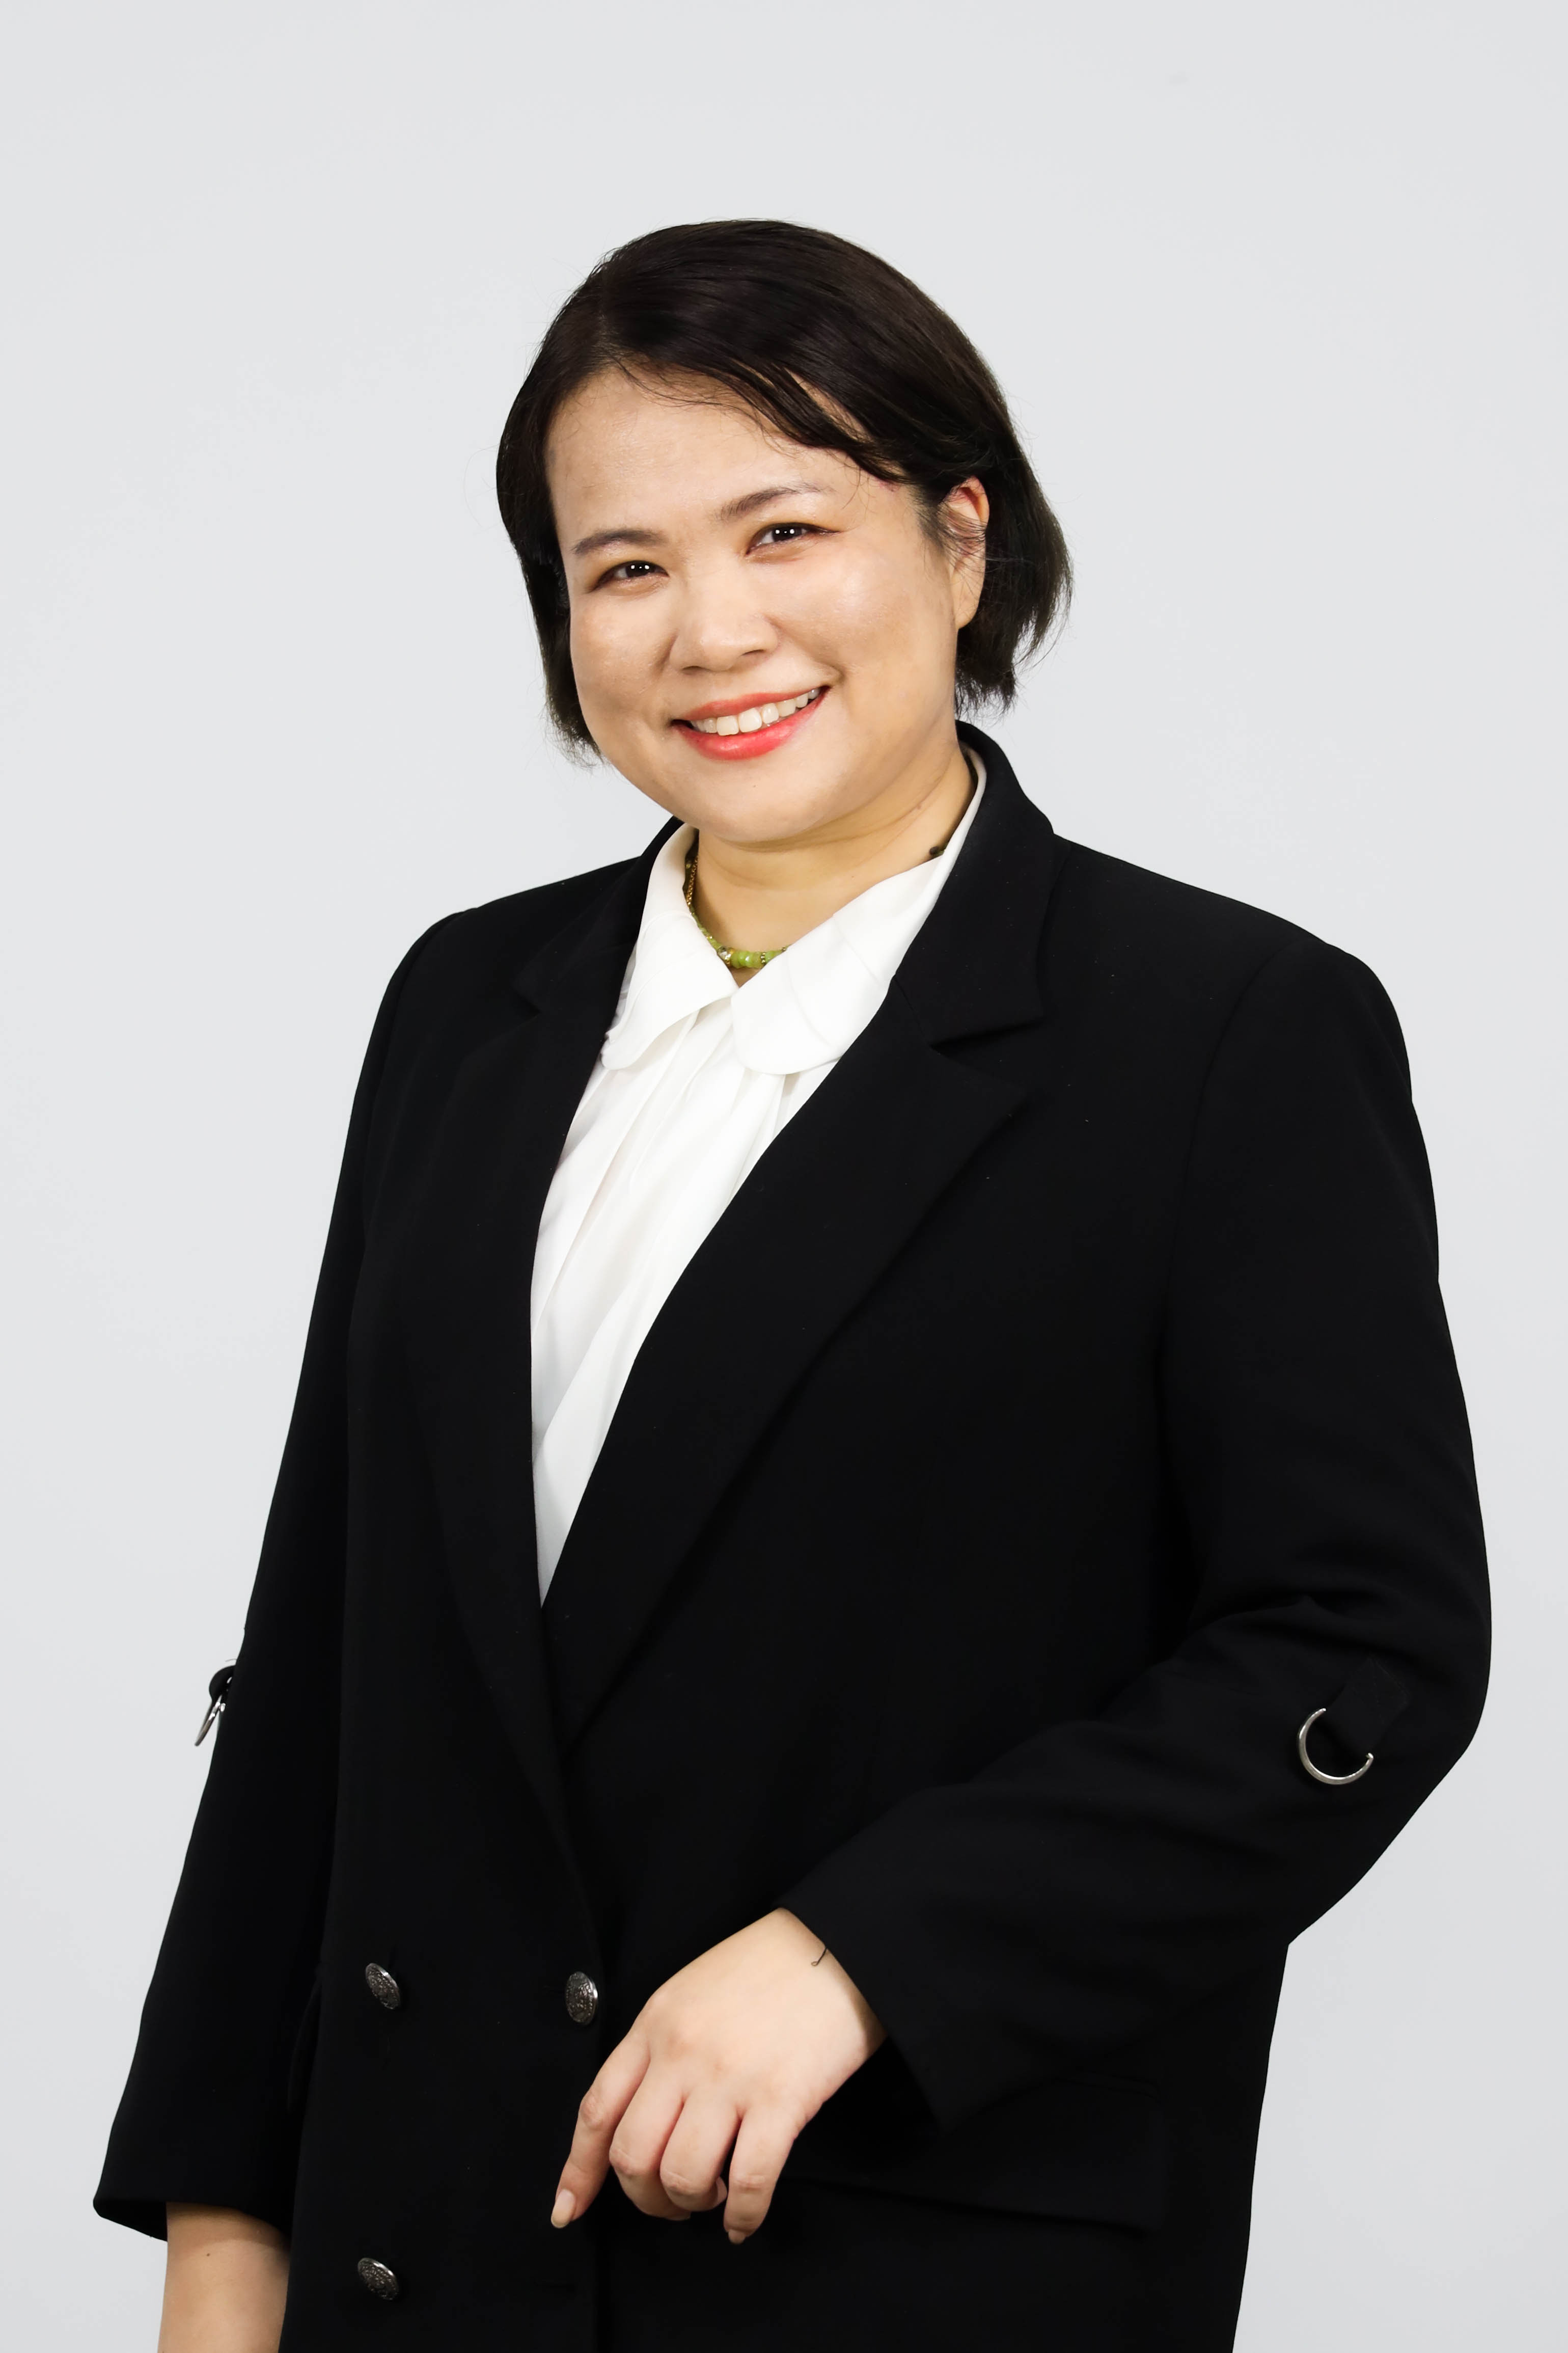 Miss Supannika Khuanmuang